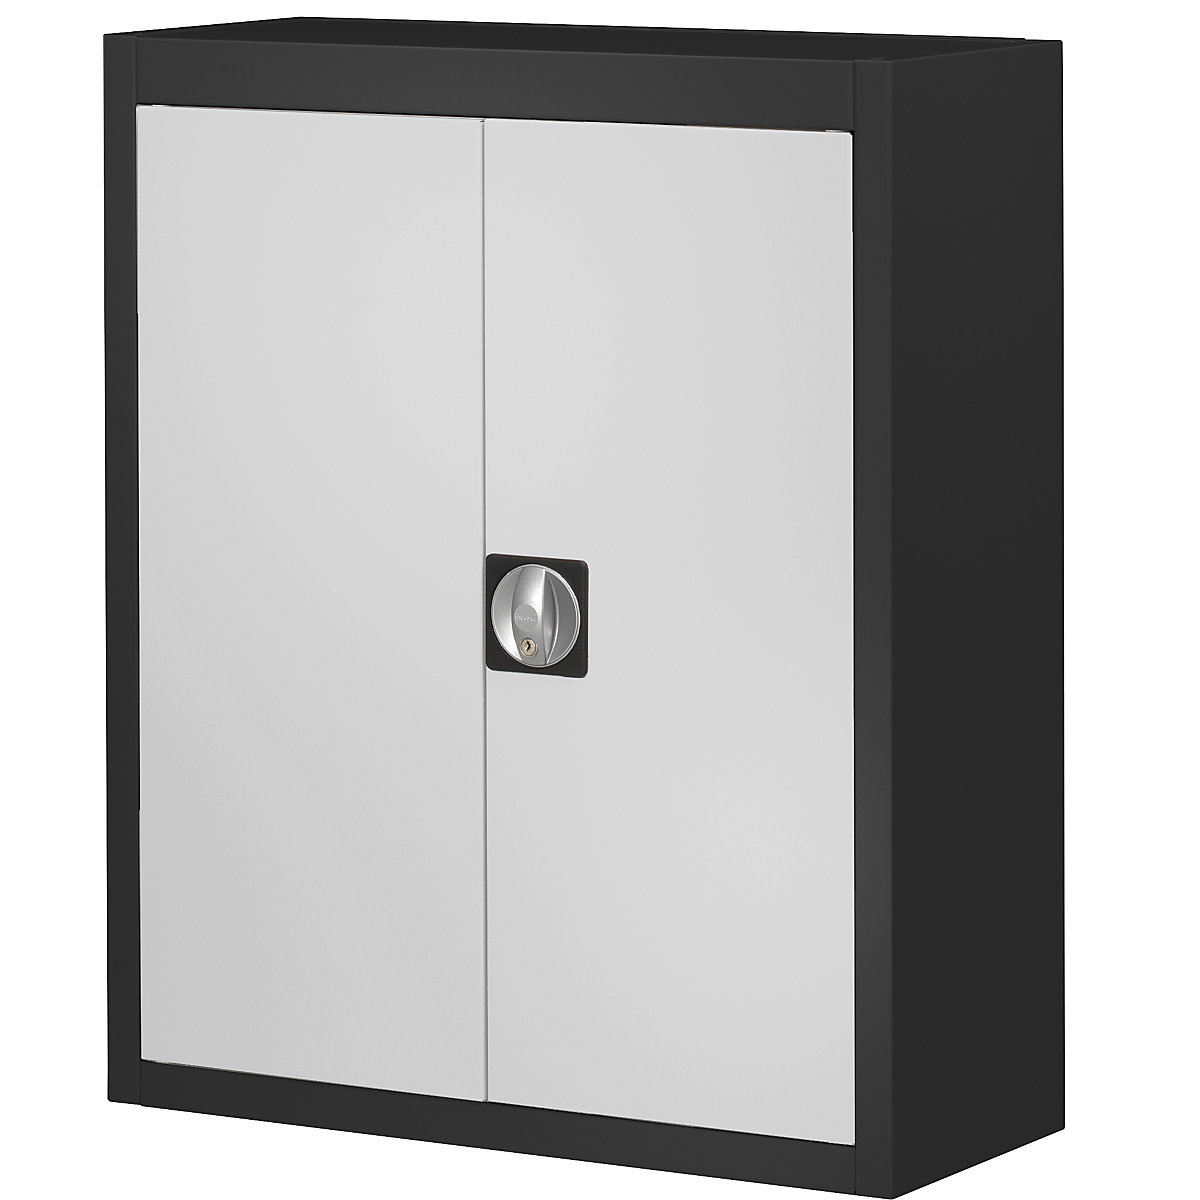 Rekesztároló szekrény, nyitott tárolódobozok nélkül – mauser, ma x szé x mé 820 x 680 x 280 mm, kétszínű, fekete váz, szürke ajtó, 3 db-tól-5